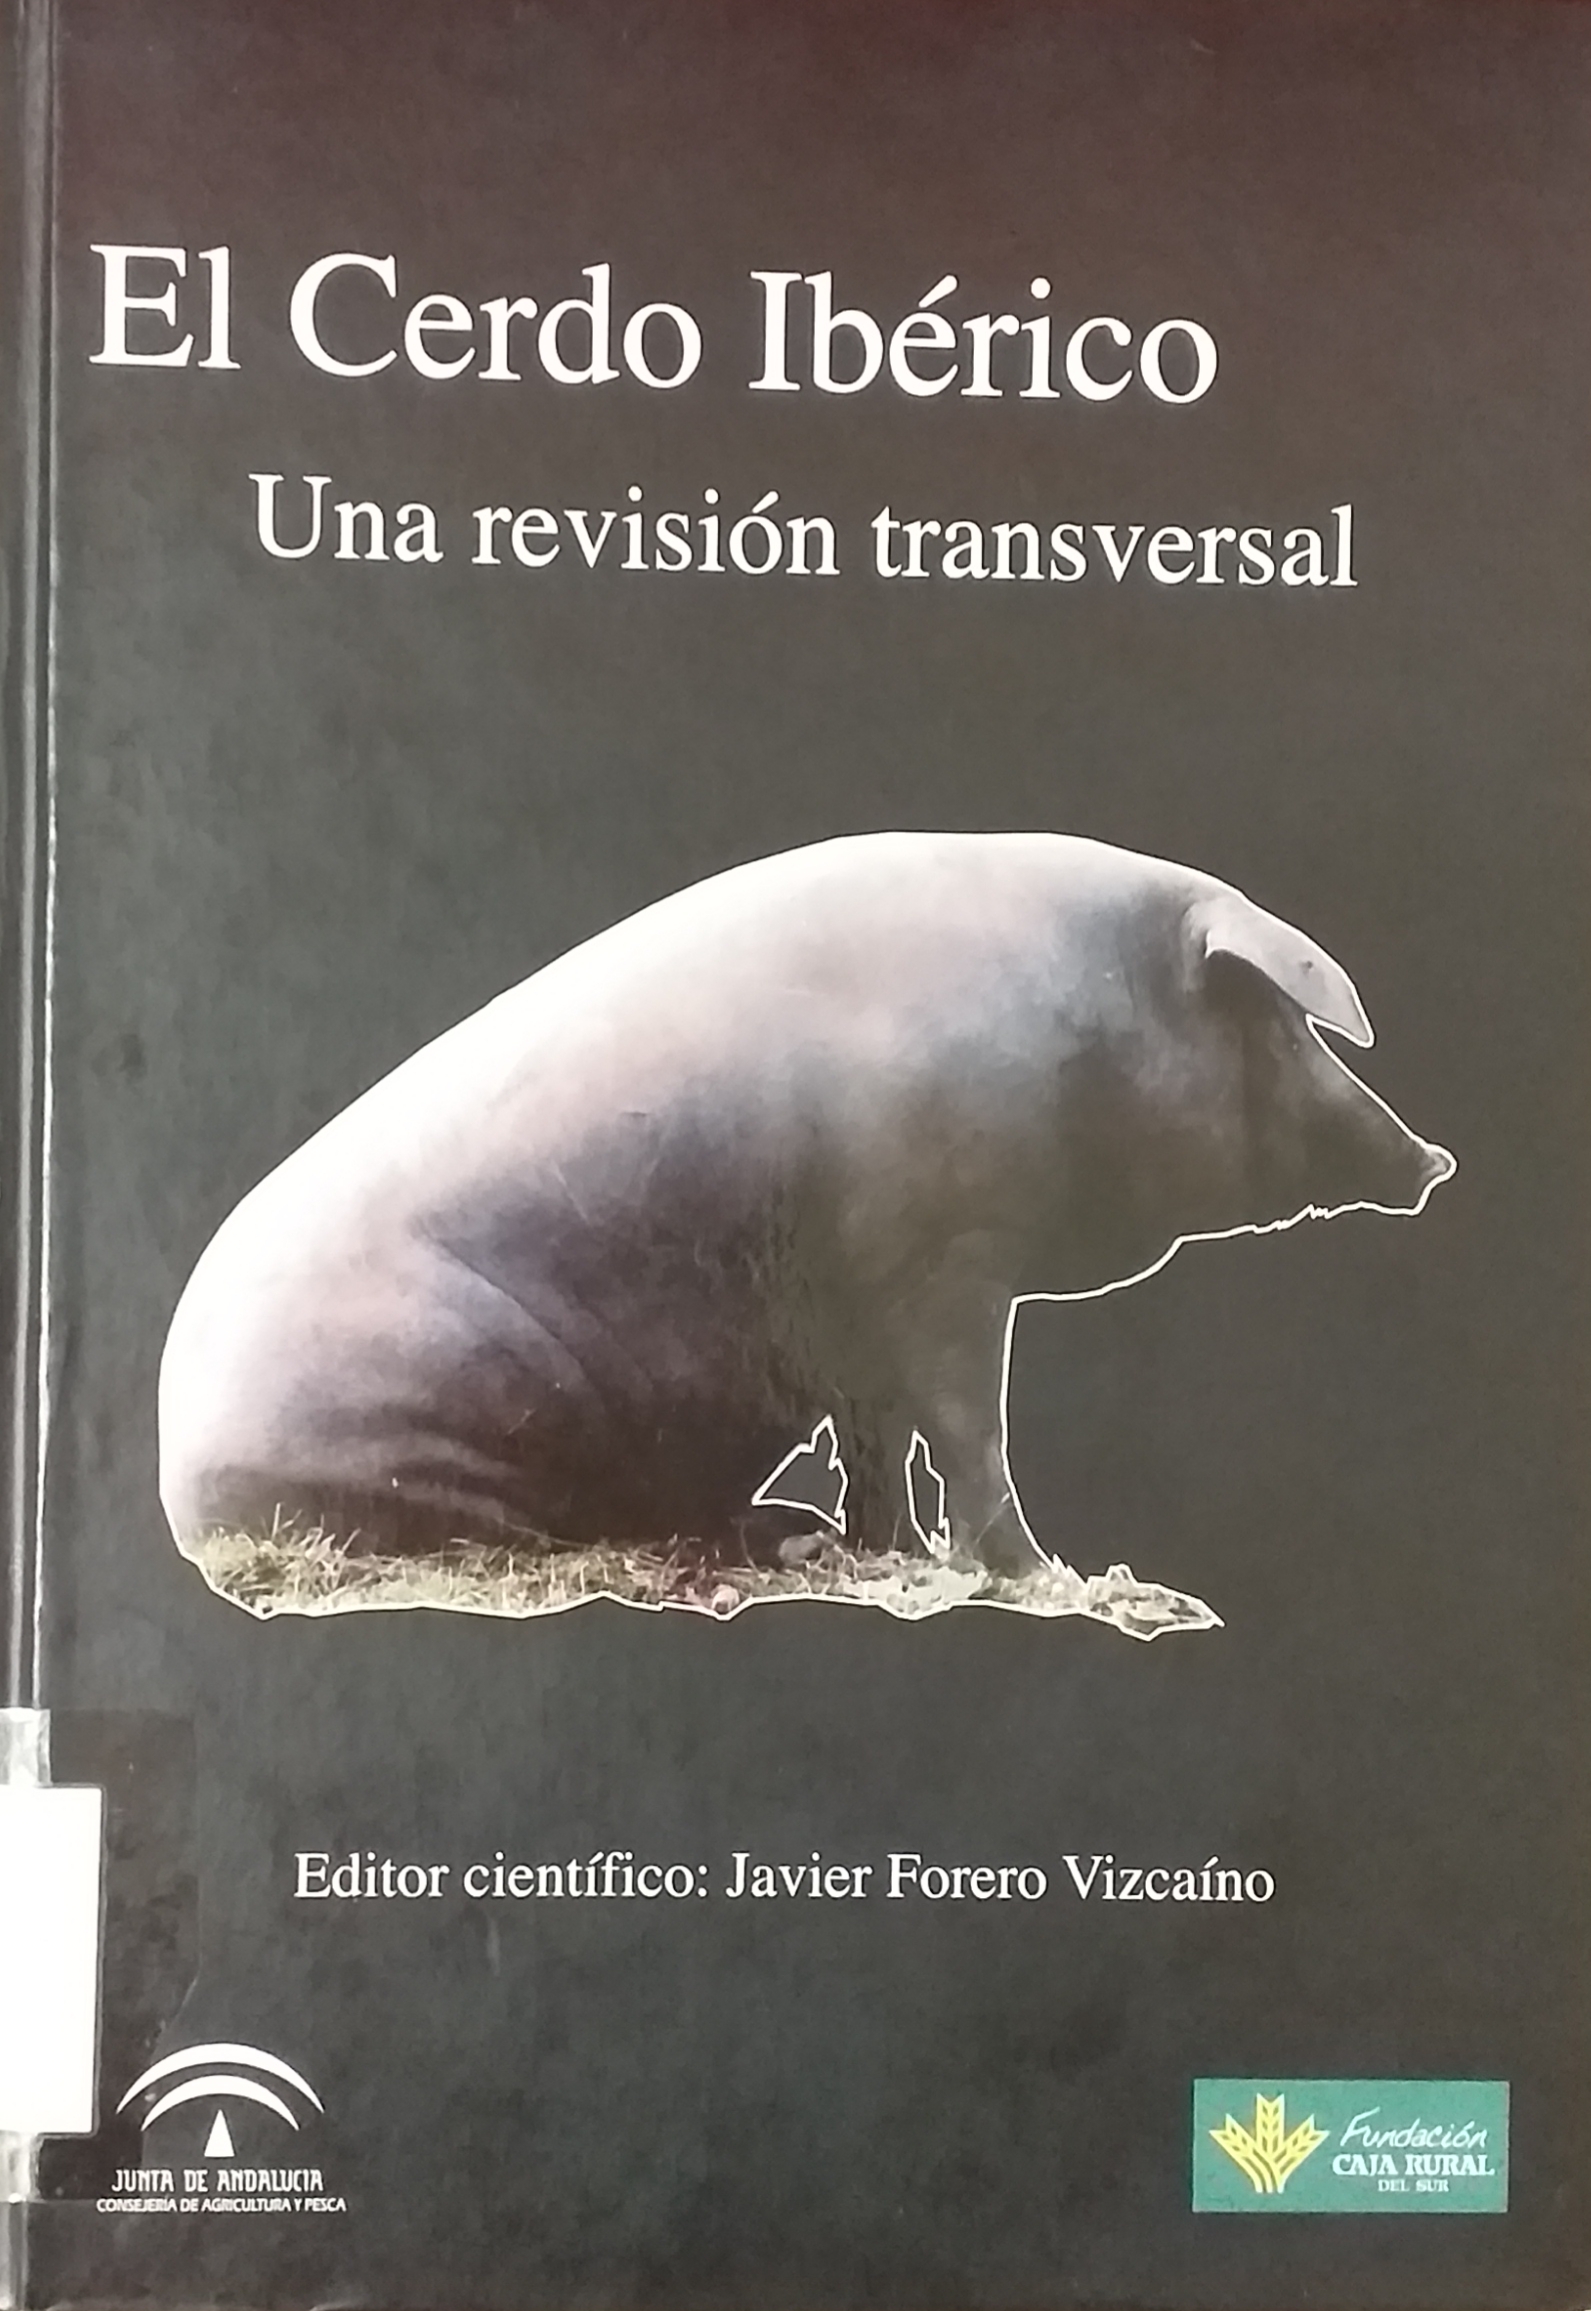 Imagen de portada del libro El cerdo ibérico